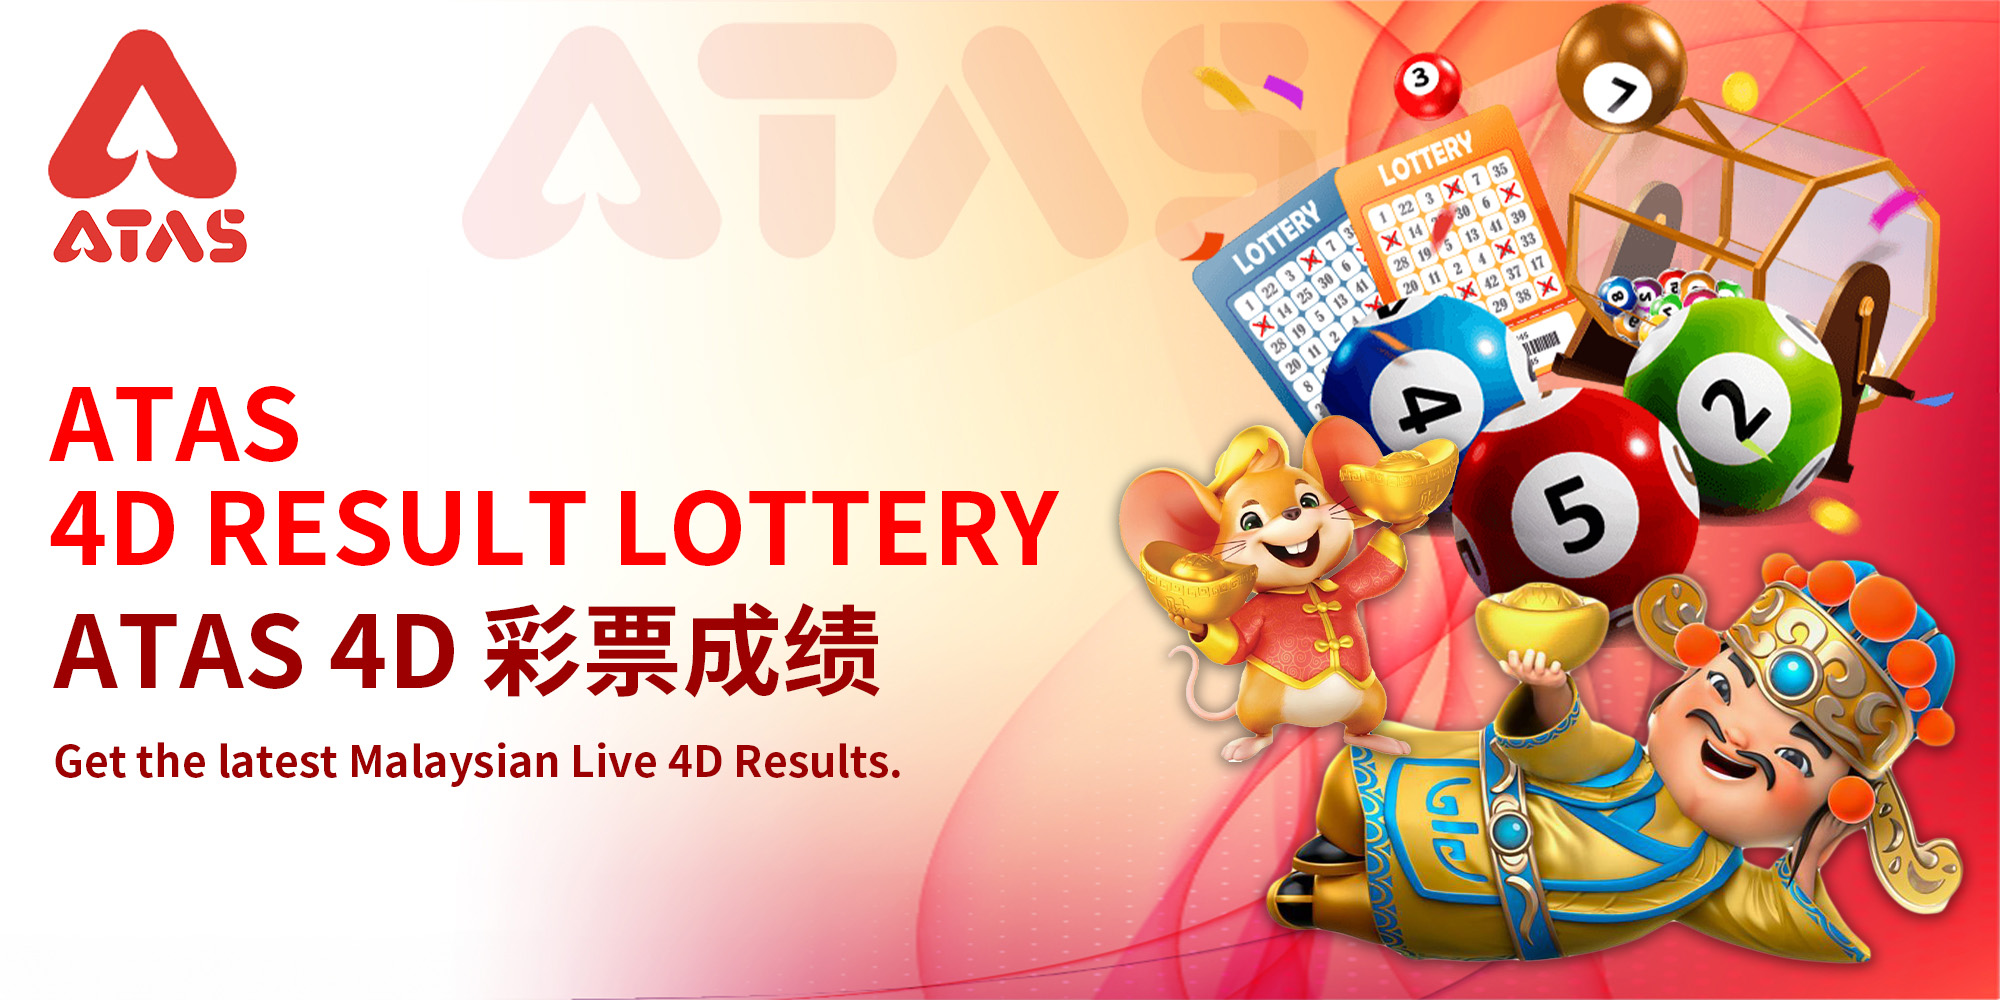 Atas Casino Atas 4D result Lottery